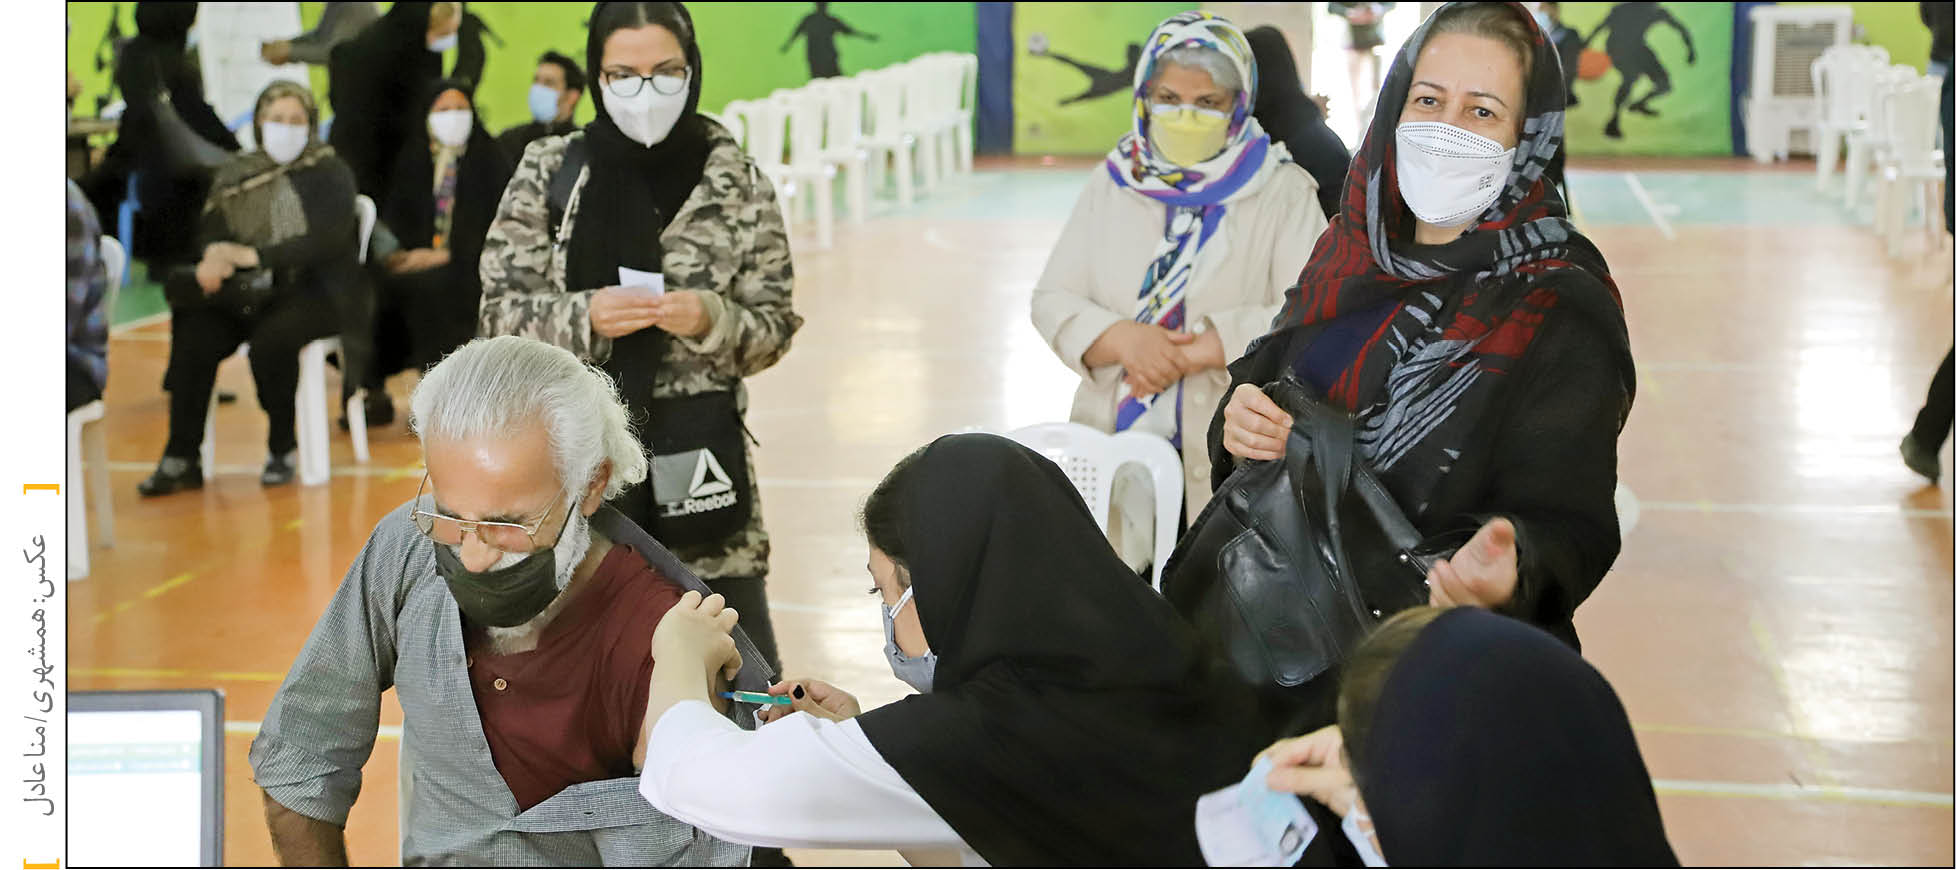 سبقت ایران از اروپا در واکسیناسیون